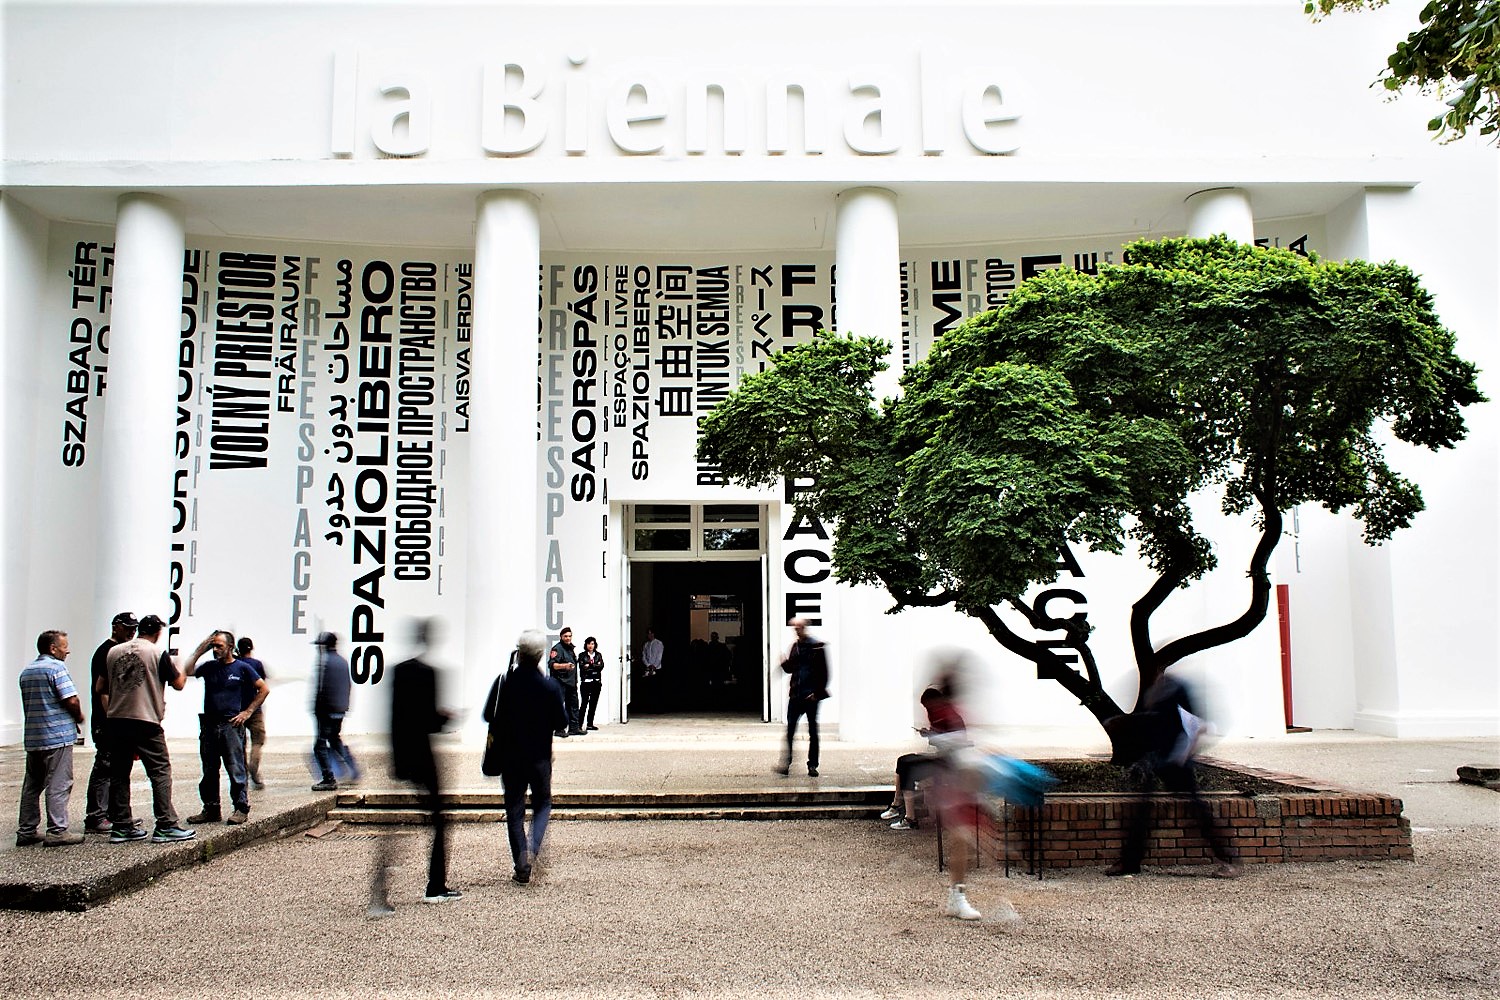 La Biennale di Venezia apre i cantieri, si lavora per raccontare l’arte